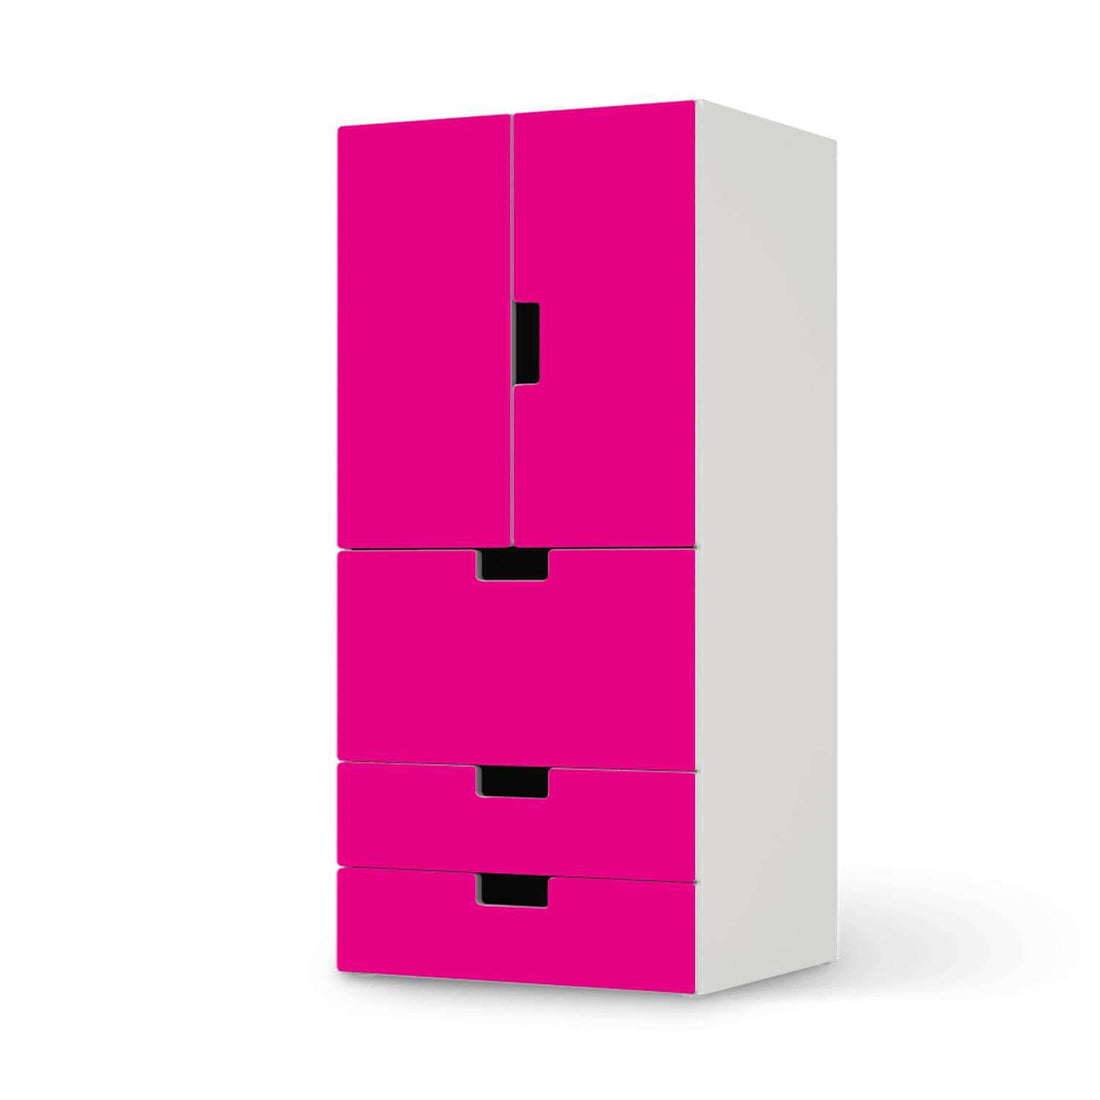 Möbelfolie Pink Dark - IKEA Stuva kombiniert - 3 Schubladen und 2 kleine Türen  - weiss